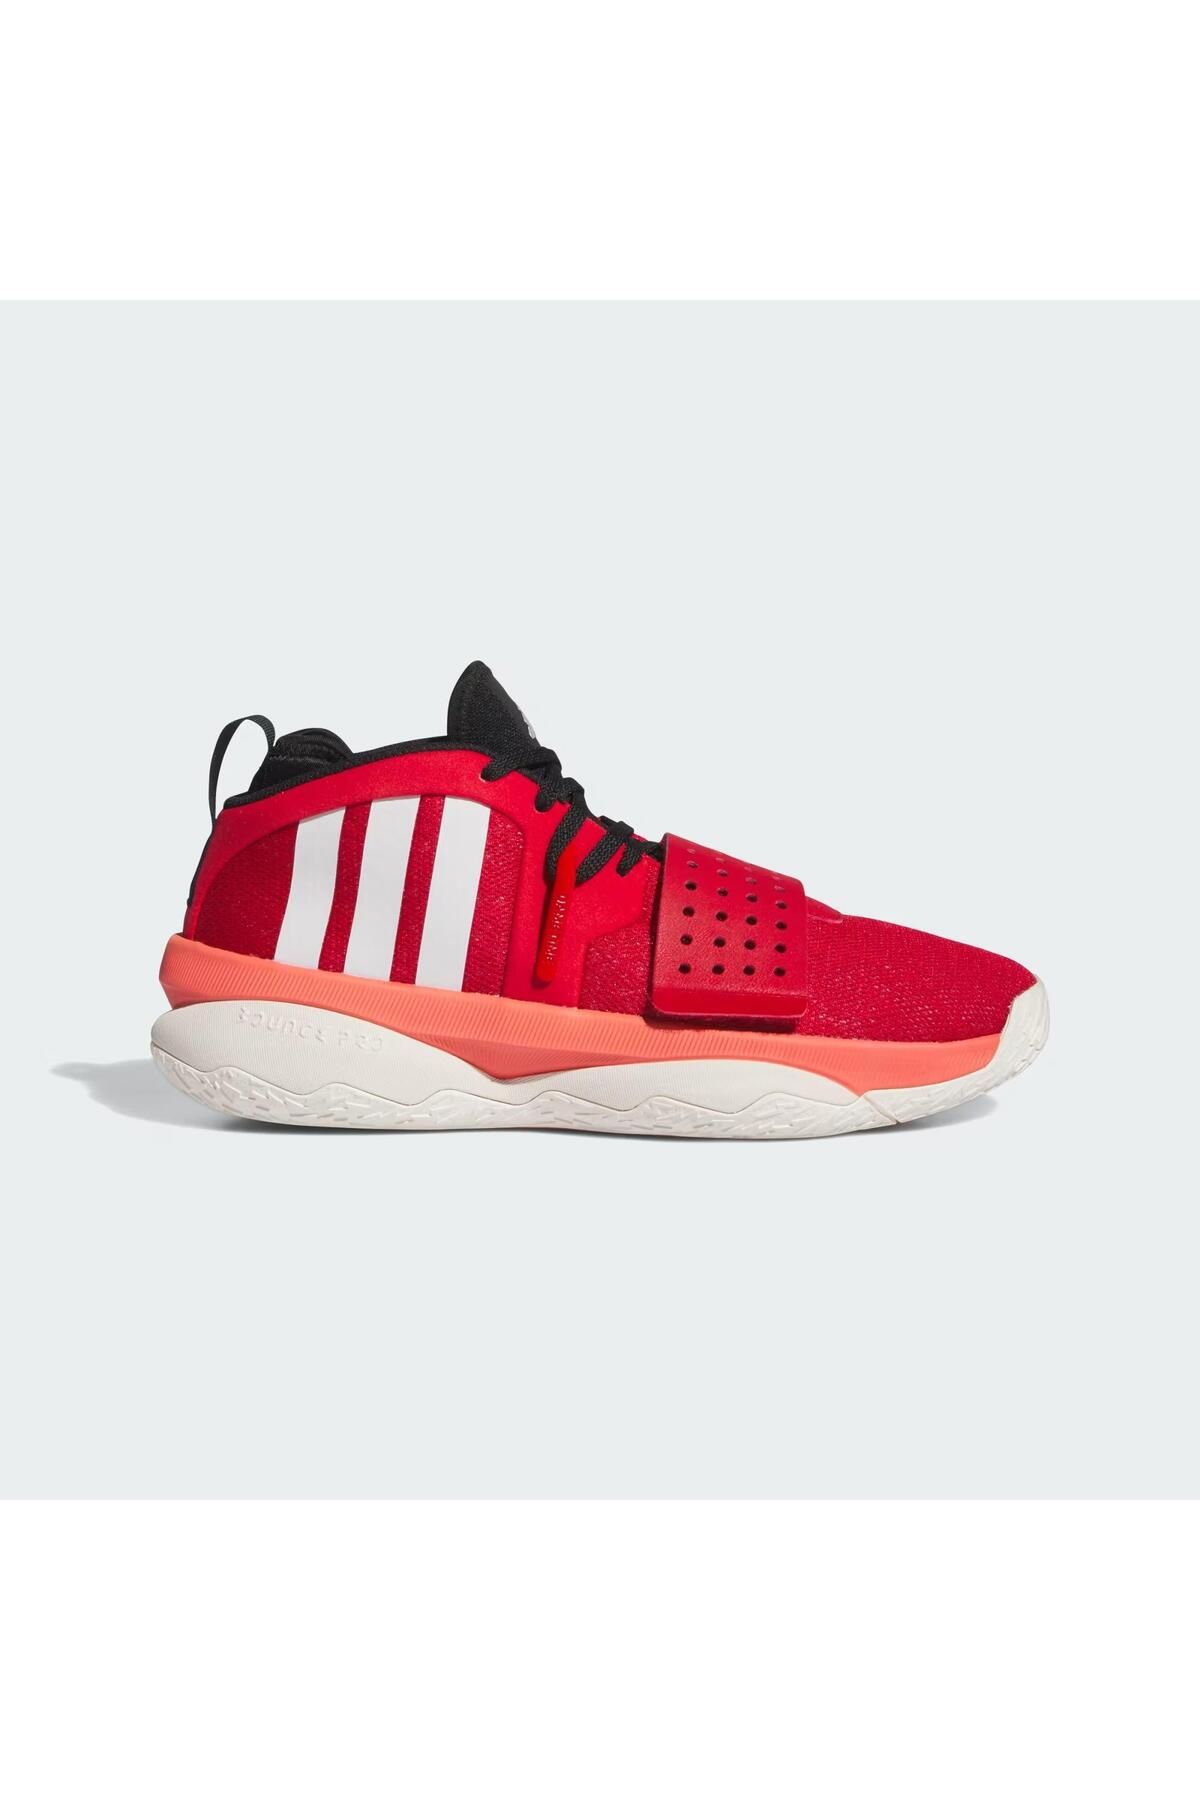 adidas Dame 8 Extply Erkek Basketbol Ayakkabısı